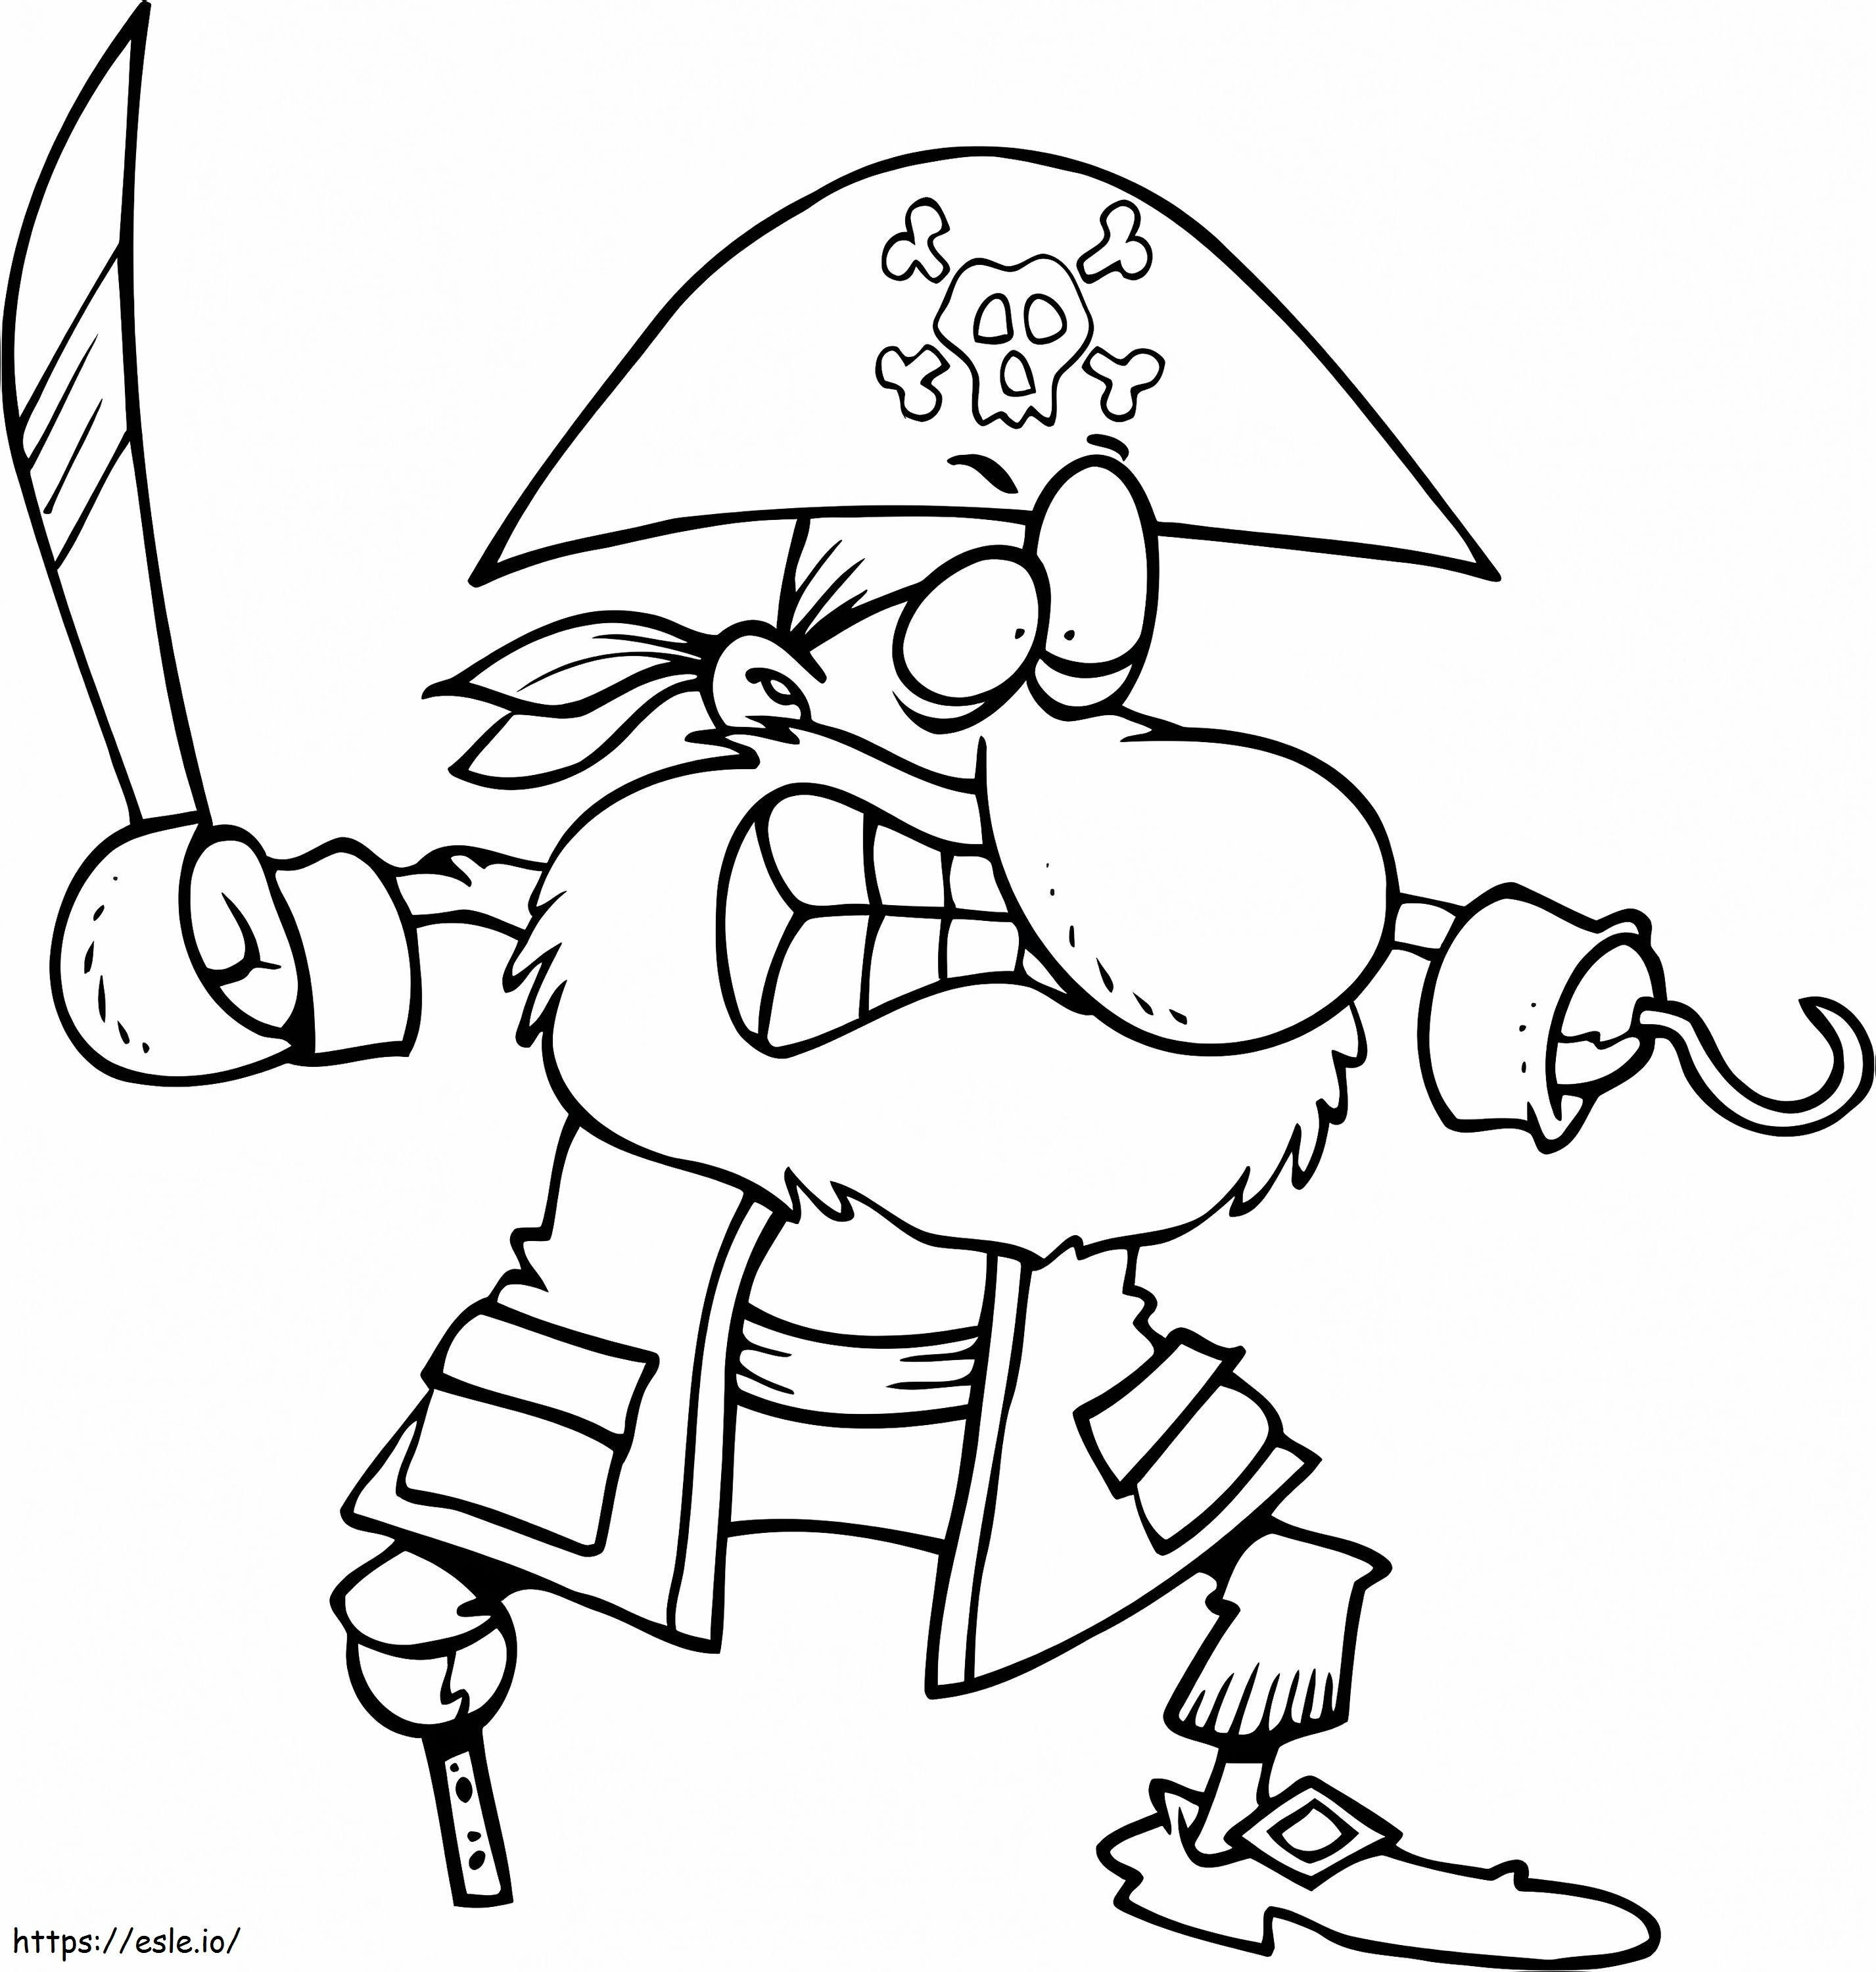 Piraten-Cartoon-Stil ausmalbilder